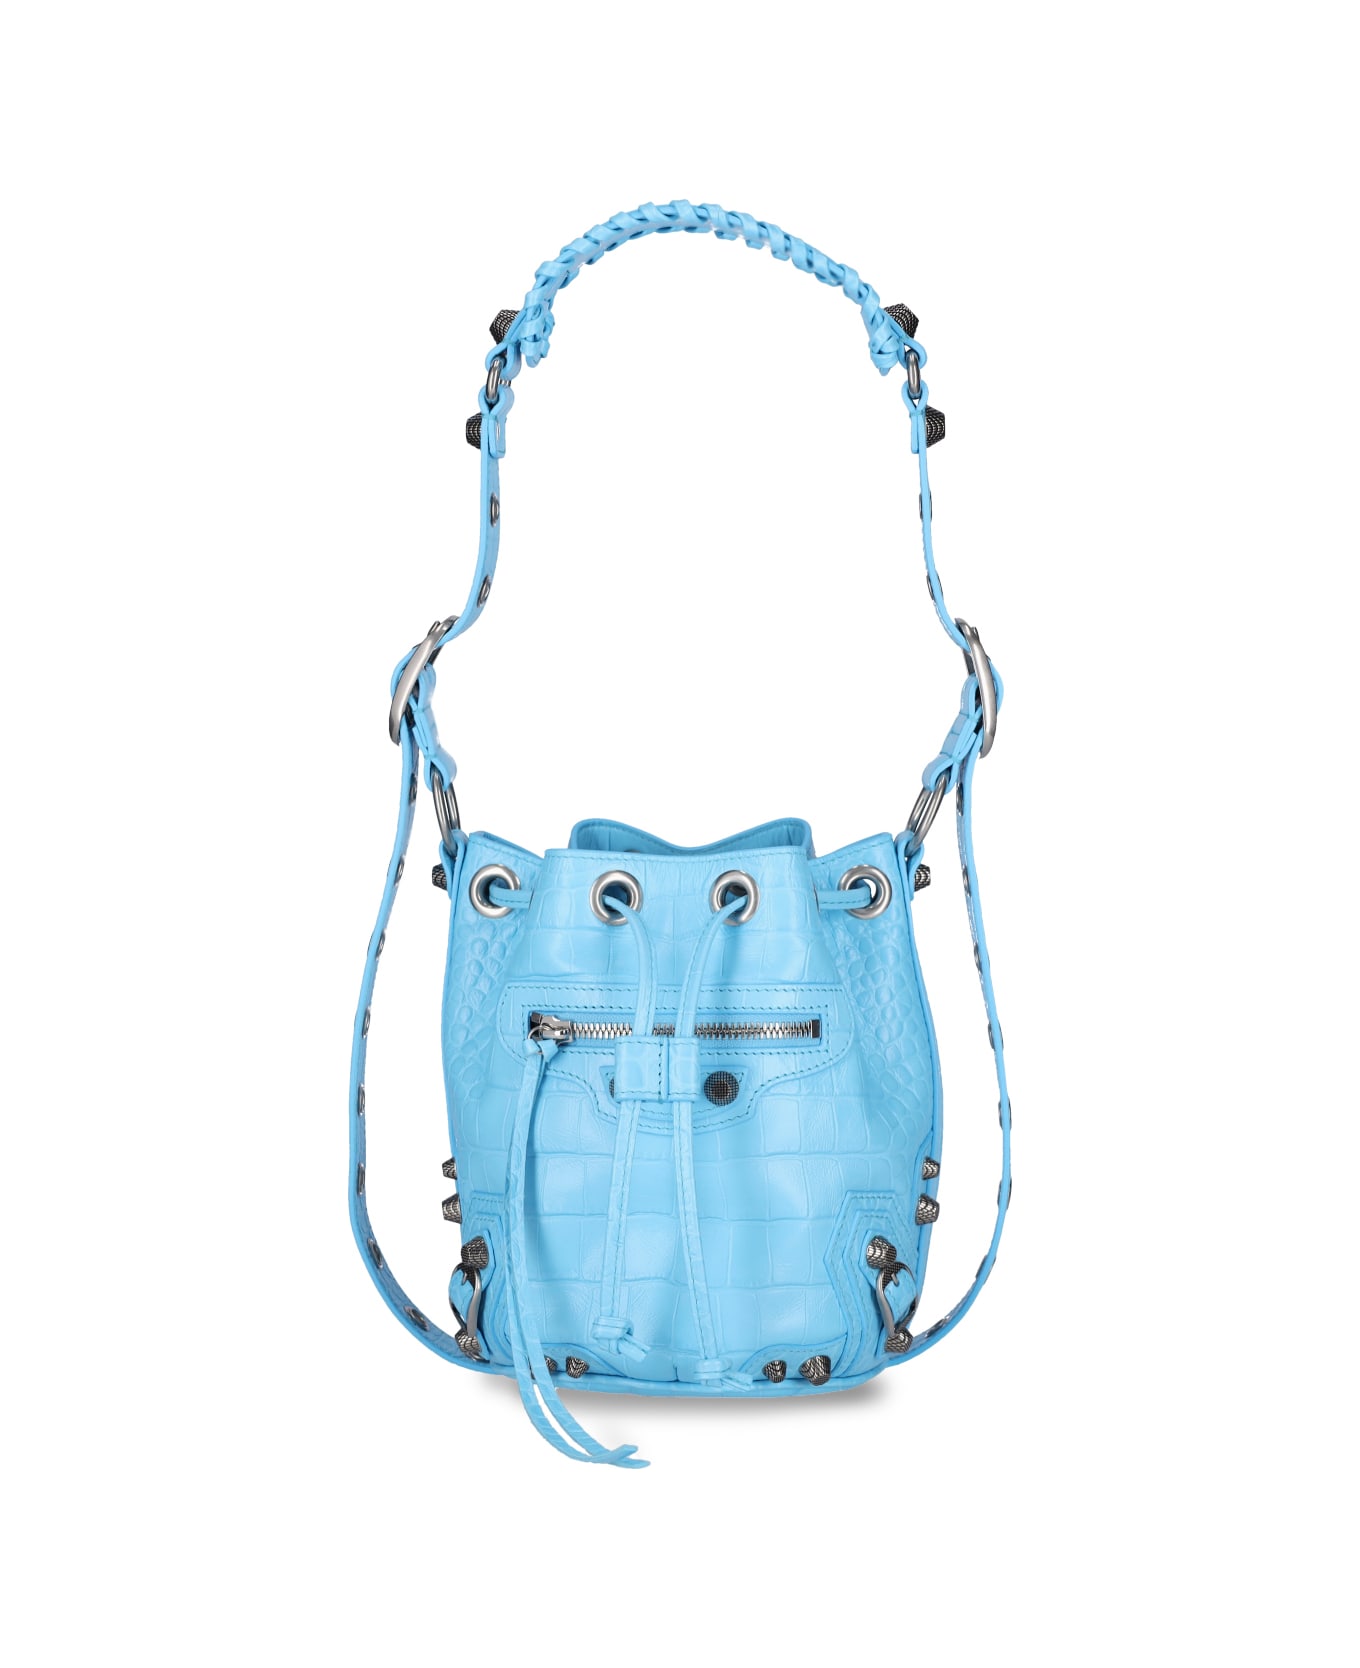 Balenciaga Le Cagole Xs Bucket Bag - Light blue トートバッグ